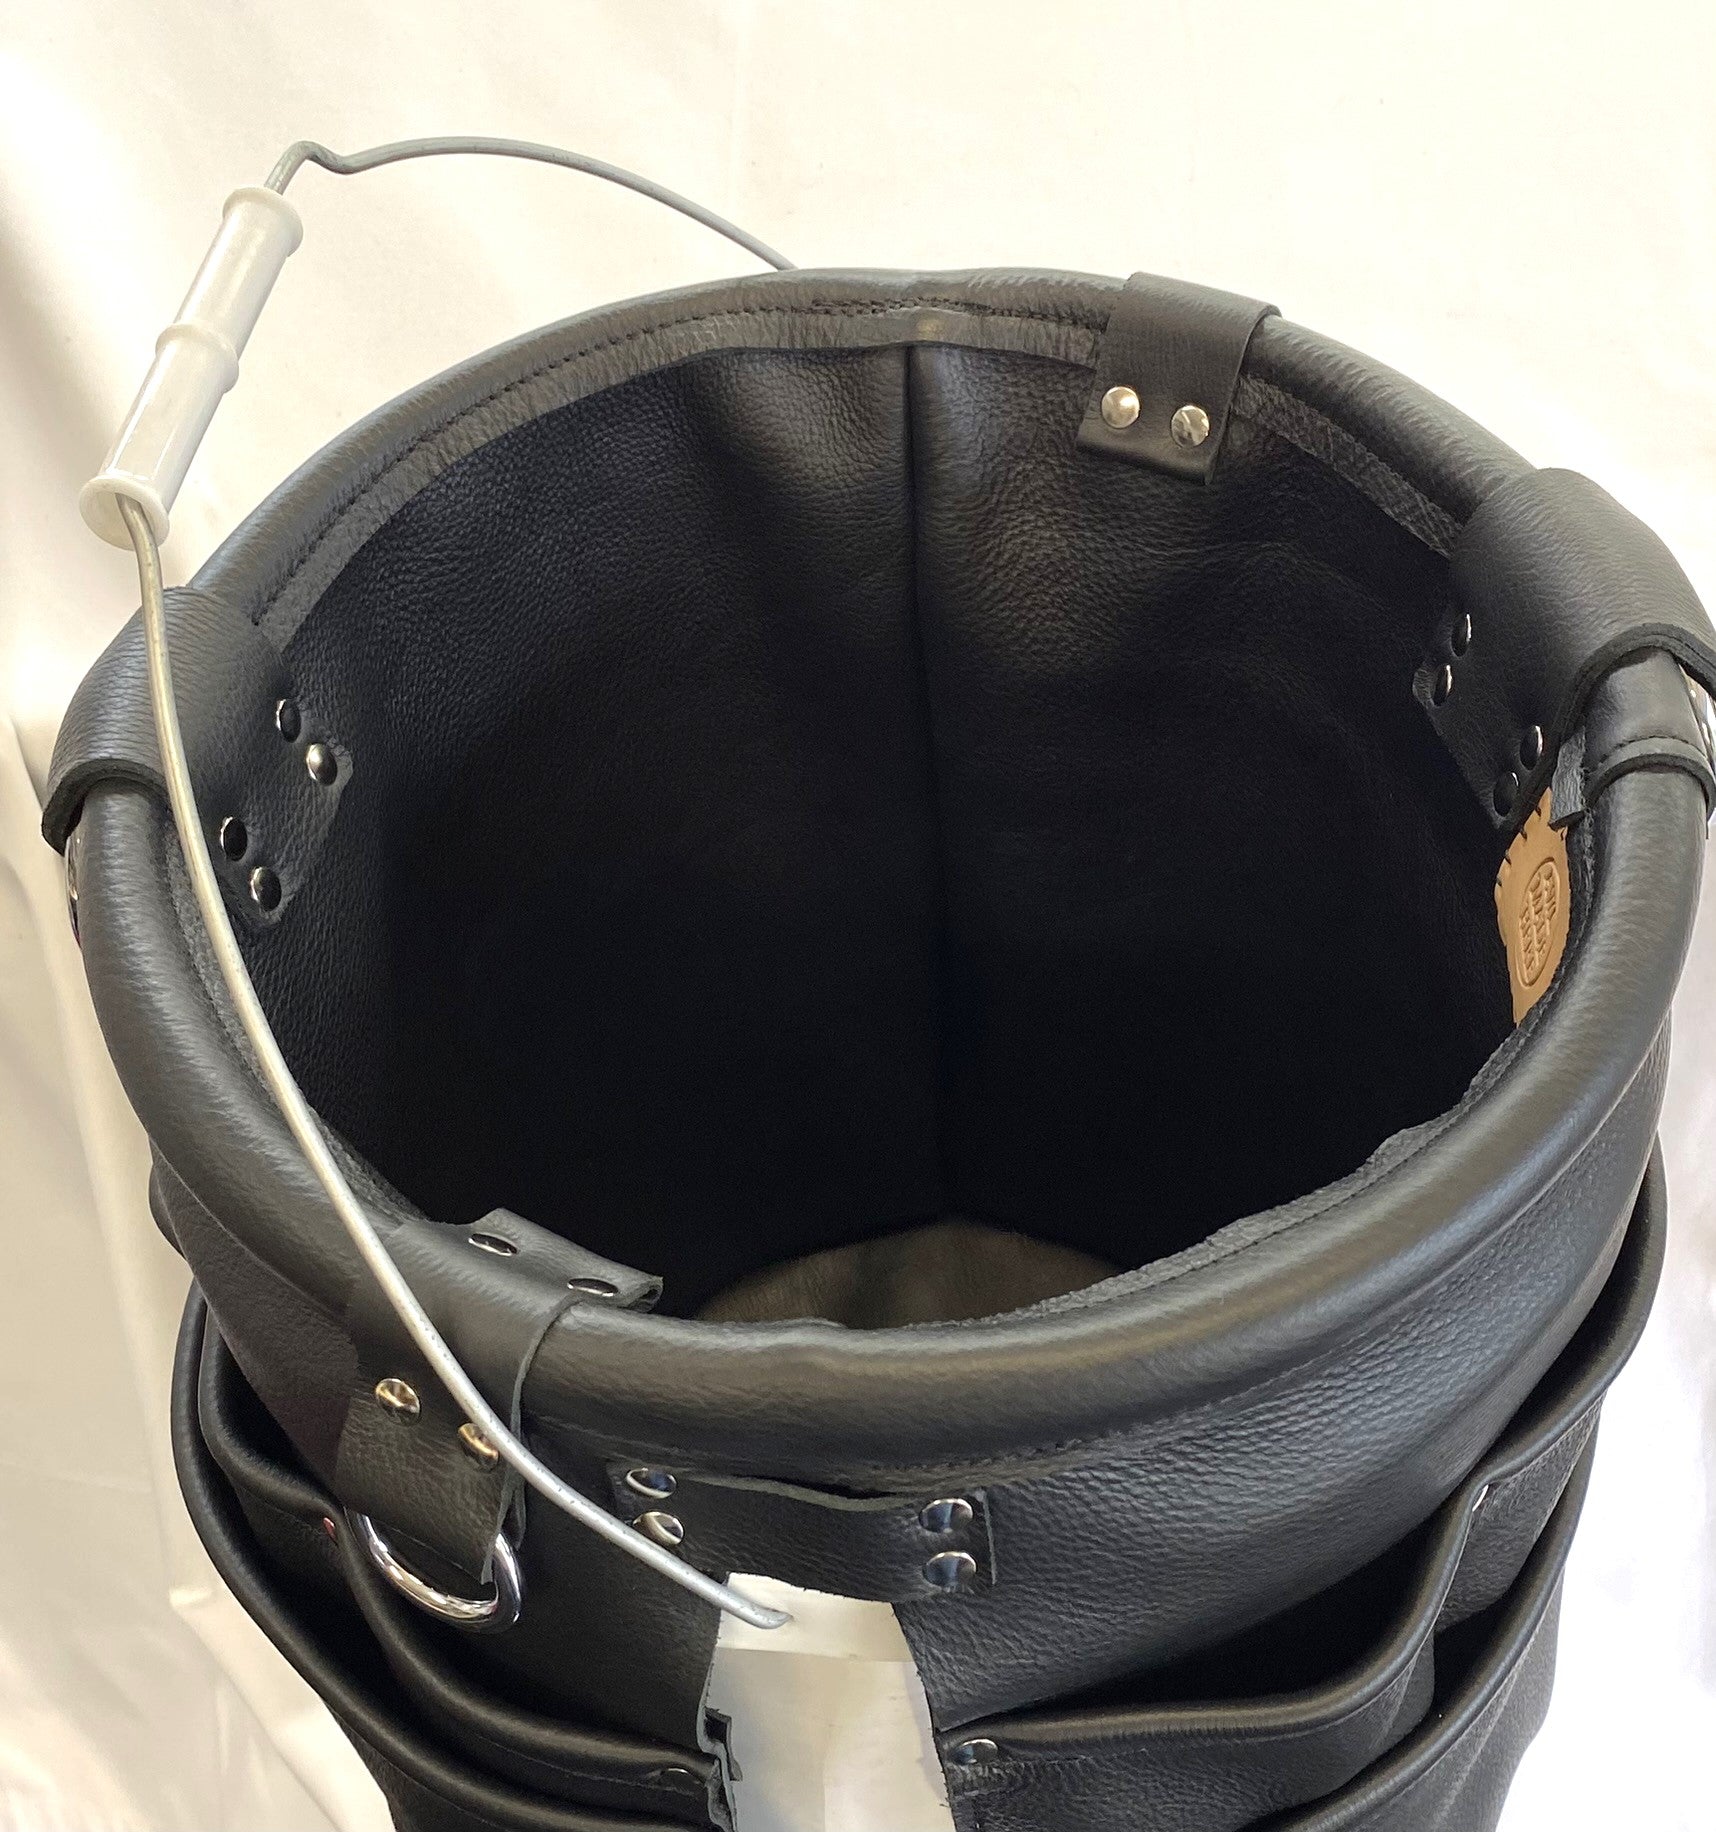 5-gallon Bucket Bag: THE BEAR